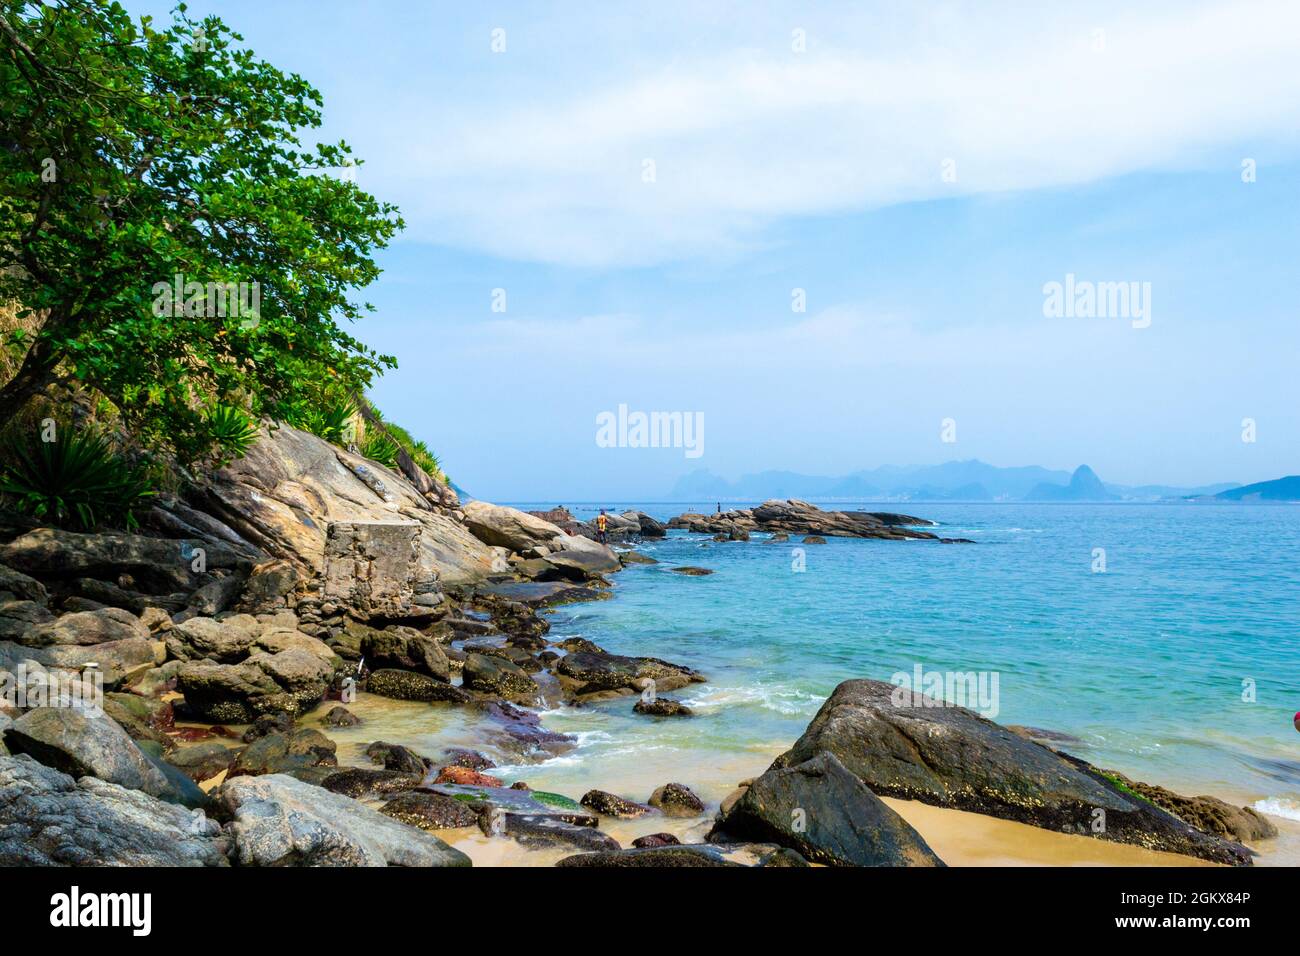 Landschaft am Rande des Wassers in Itaipu Beach, Rio de Janeiro, Brasilien. Schöner Kontrast von blauem Wasser und Felsen. Der berühmte Ort ist ein großer touris Stockfoto